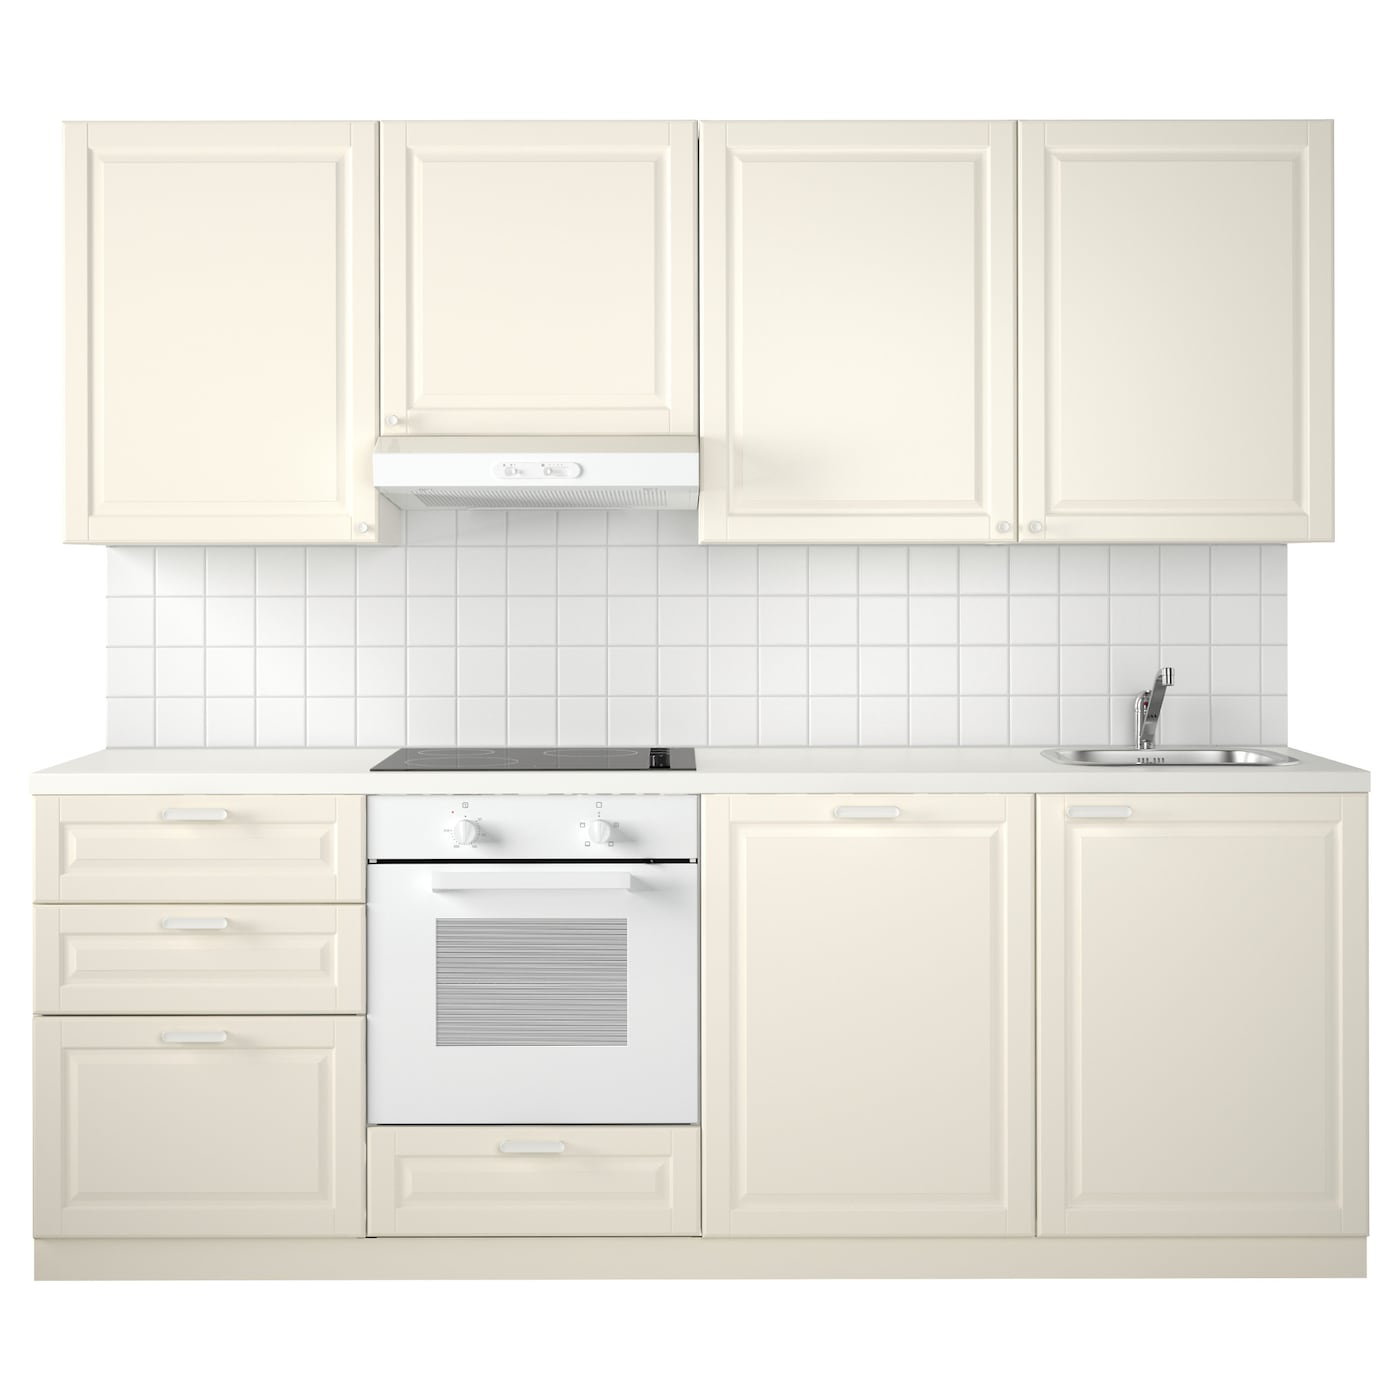 Модульный шкаф - METOD IKEA/ МЕТОД ИКЕА, 228х240 см, белый